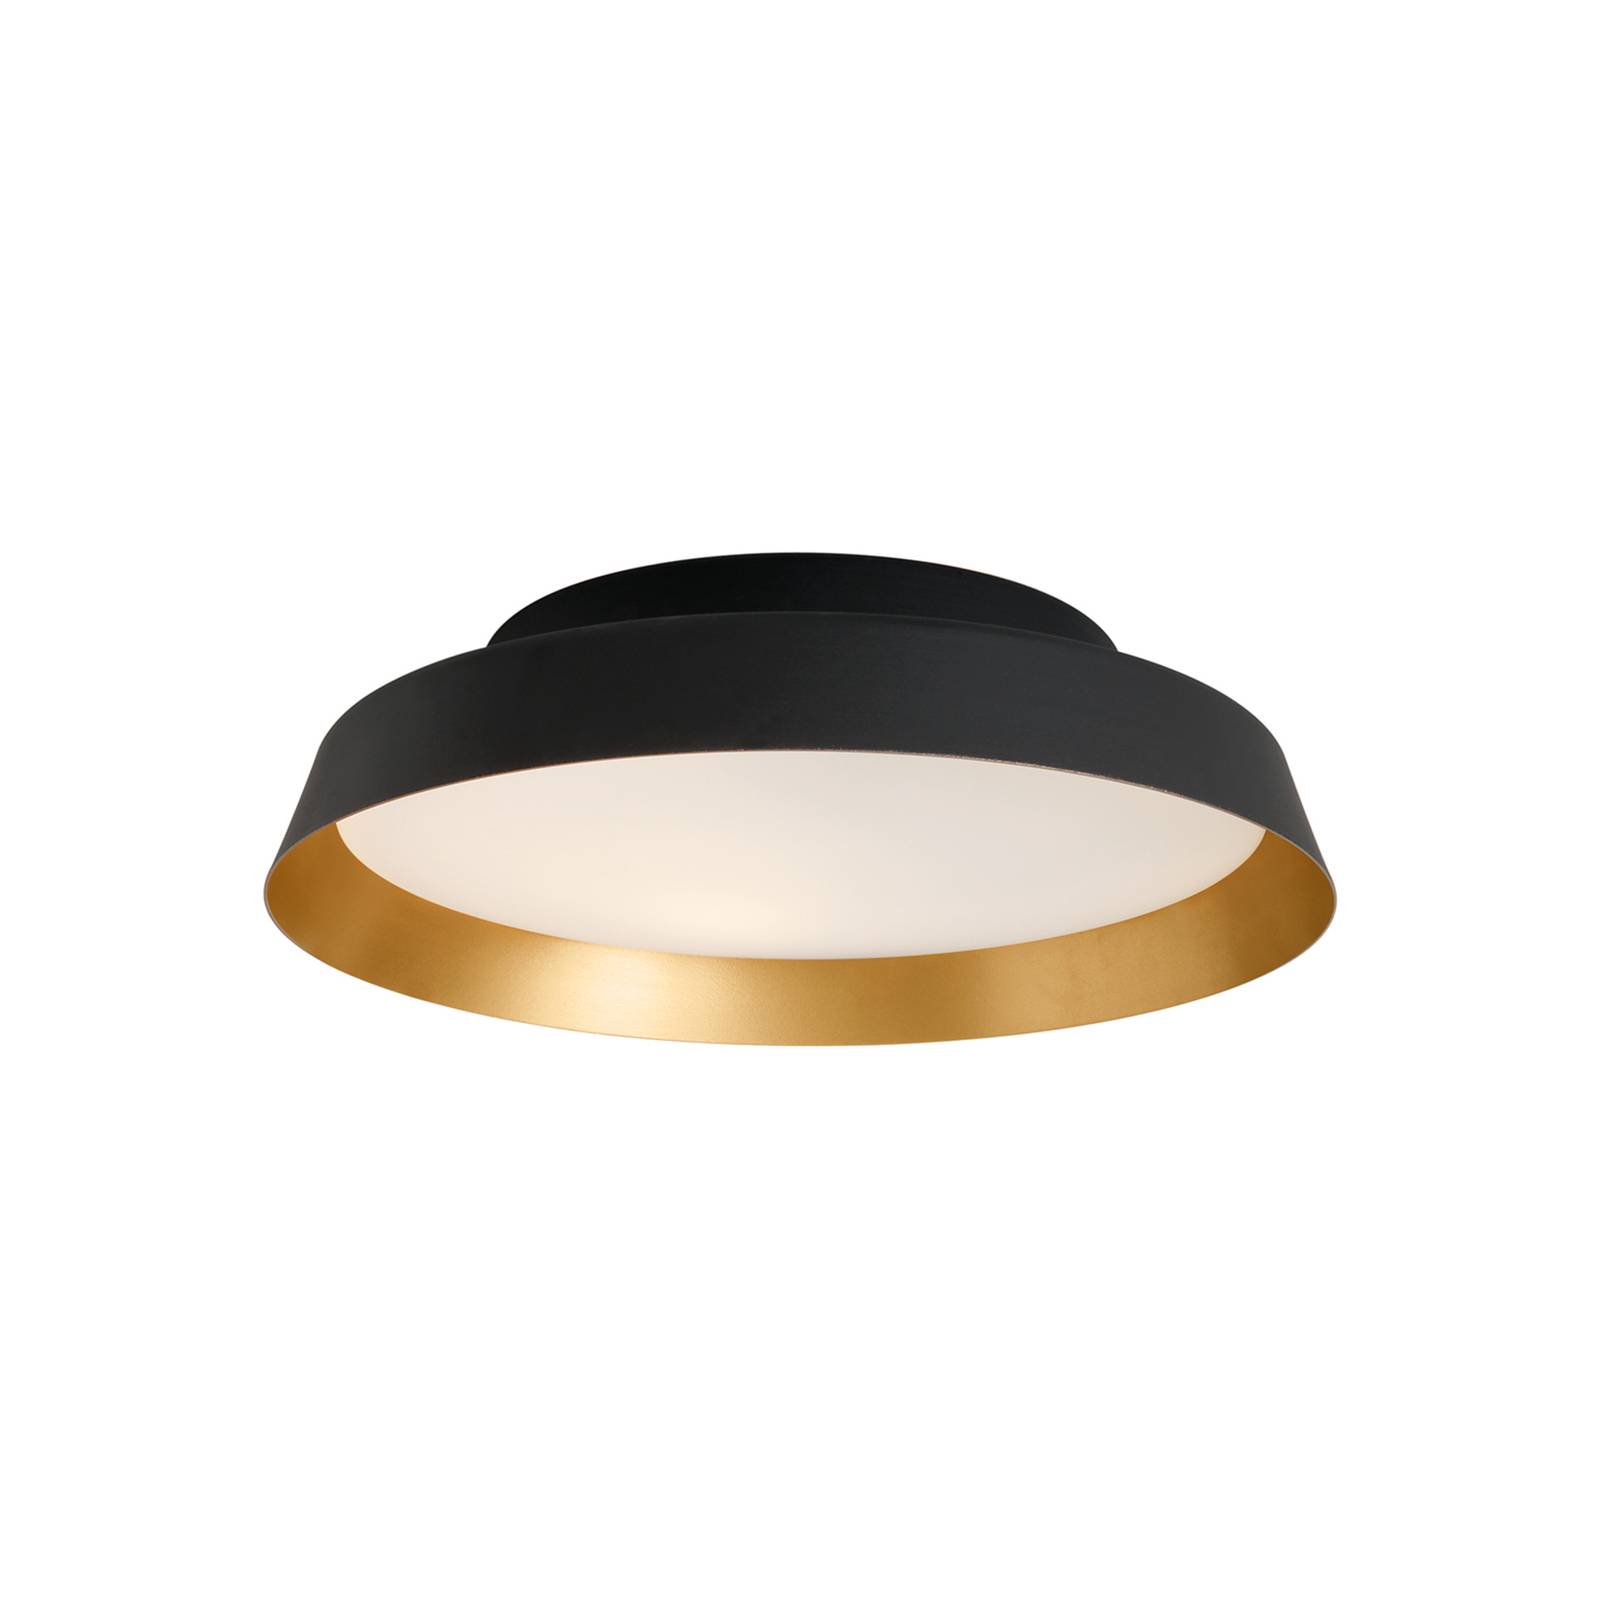 Carpyen LED-Deckenleuchte Boop! Ø37cm schwarz/gold